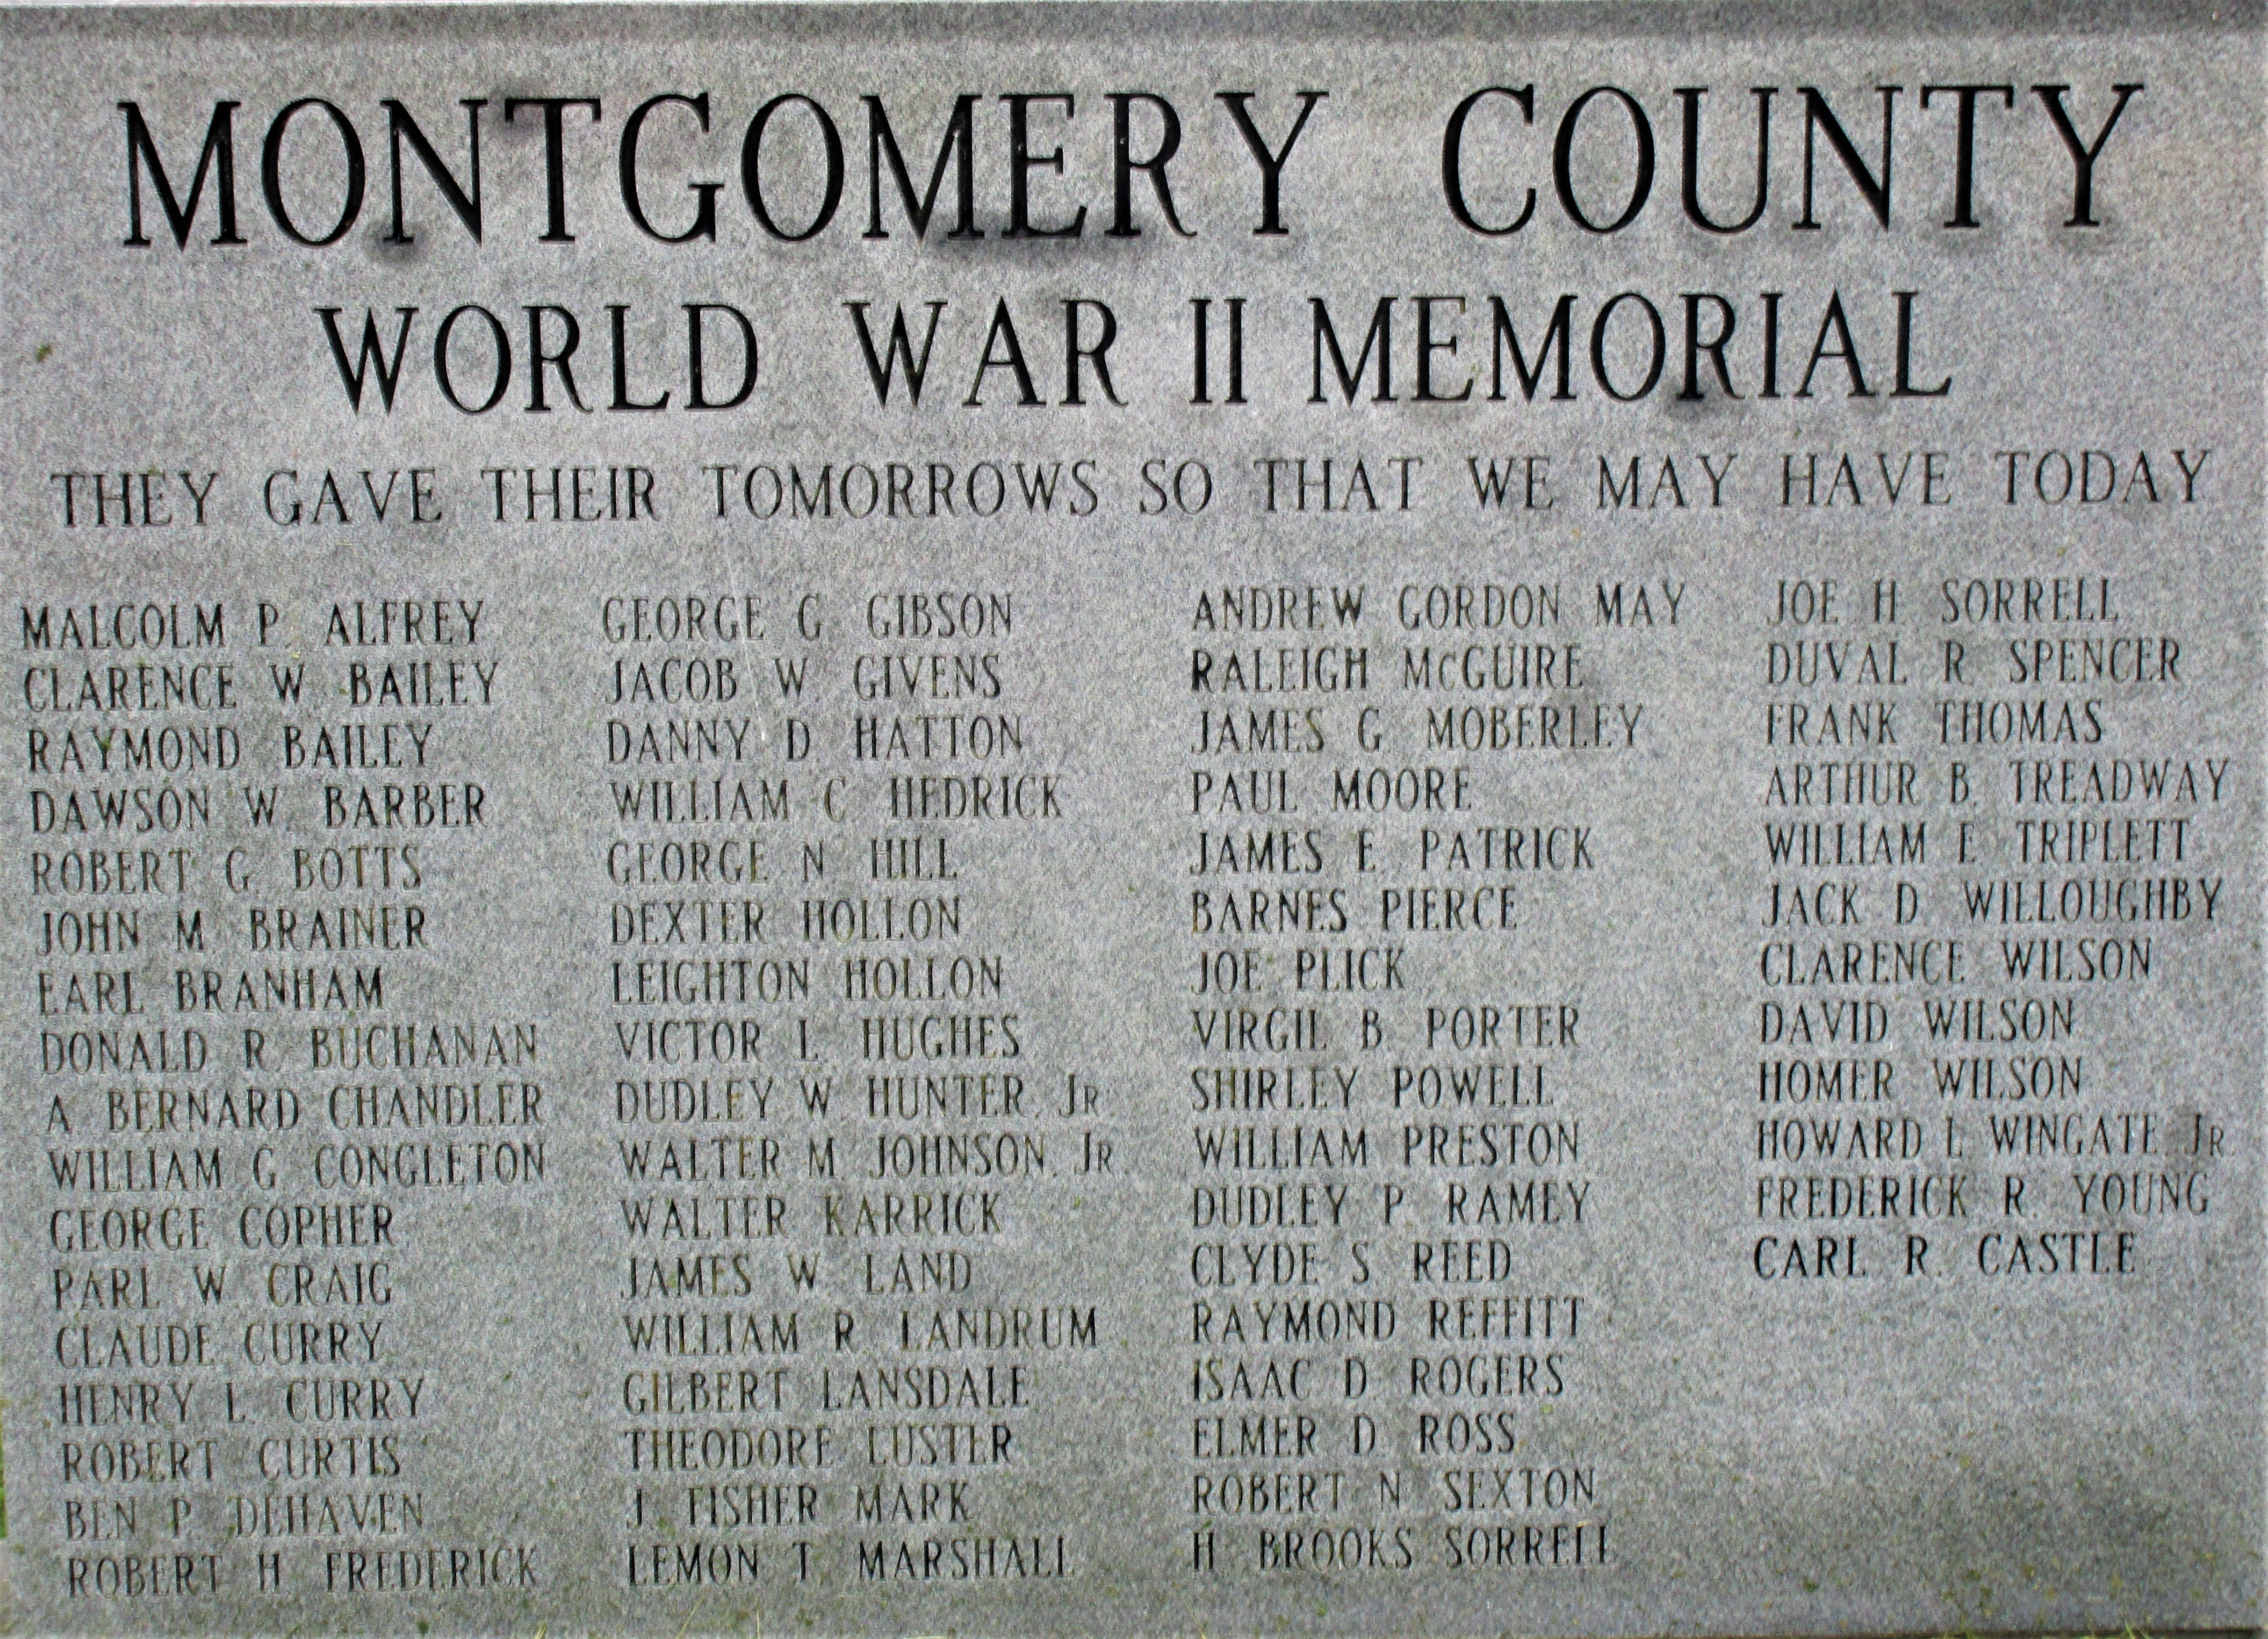 Montgomery County World War II Memorial